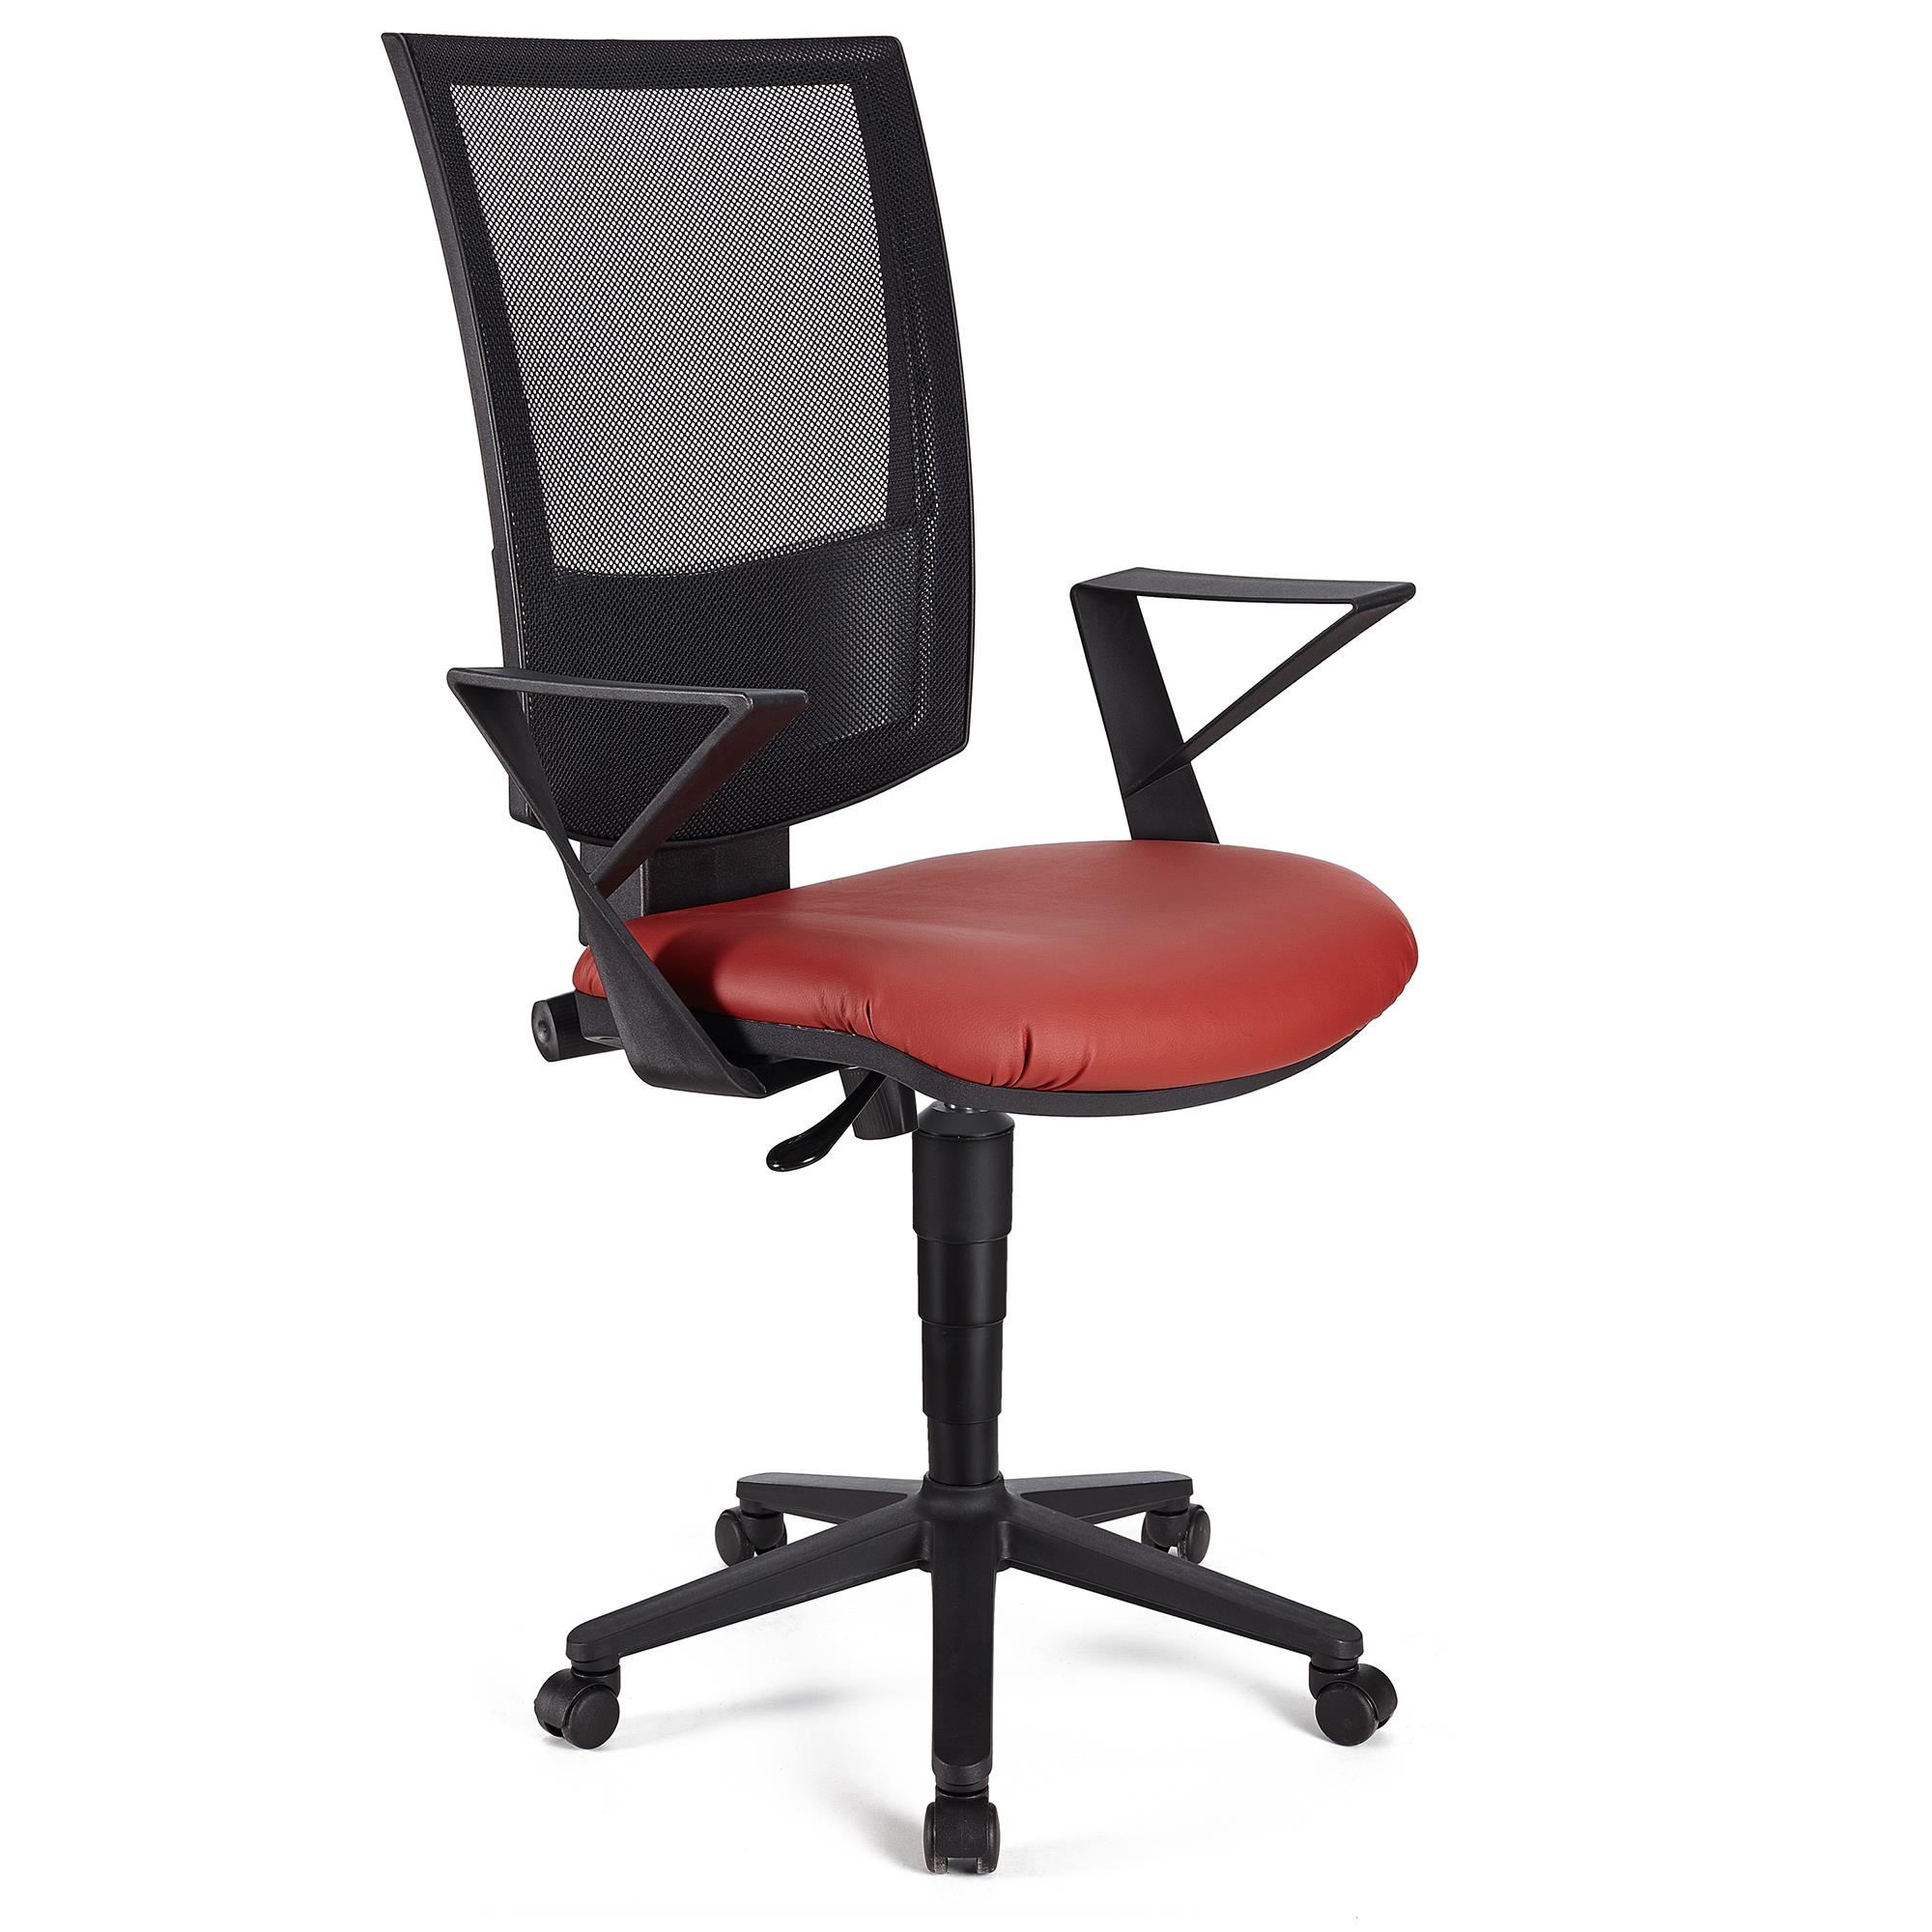 Bürostuhl PANDORA LEDER mit Armlehnen, Rückenlehne mit Netzbezug, dicke Polsterung, Farbe Rot